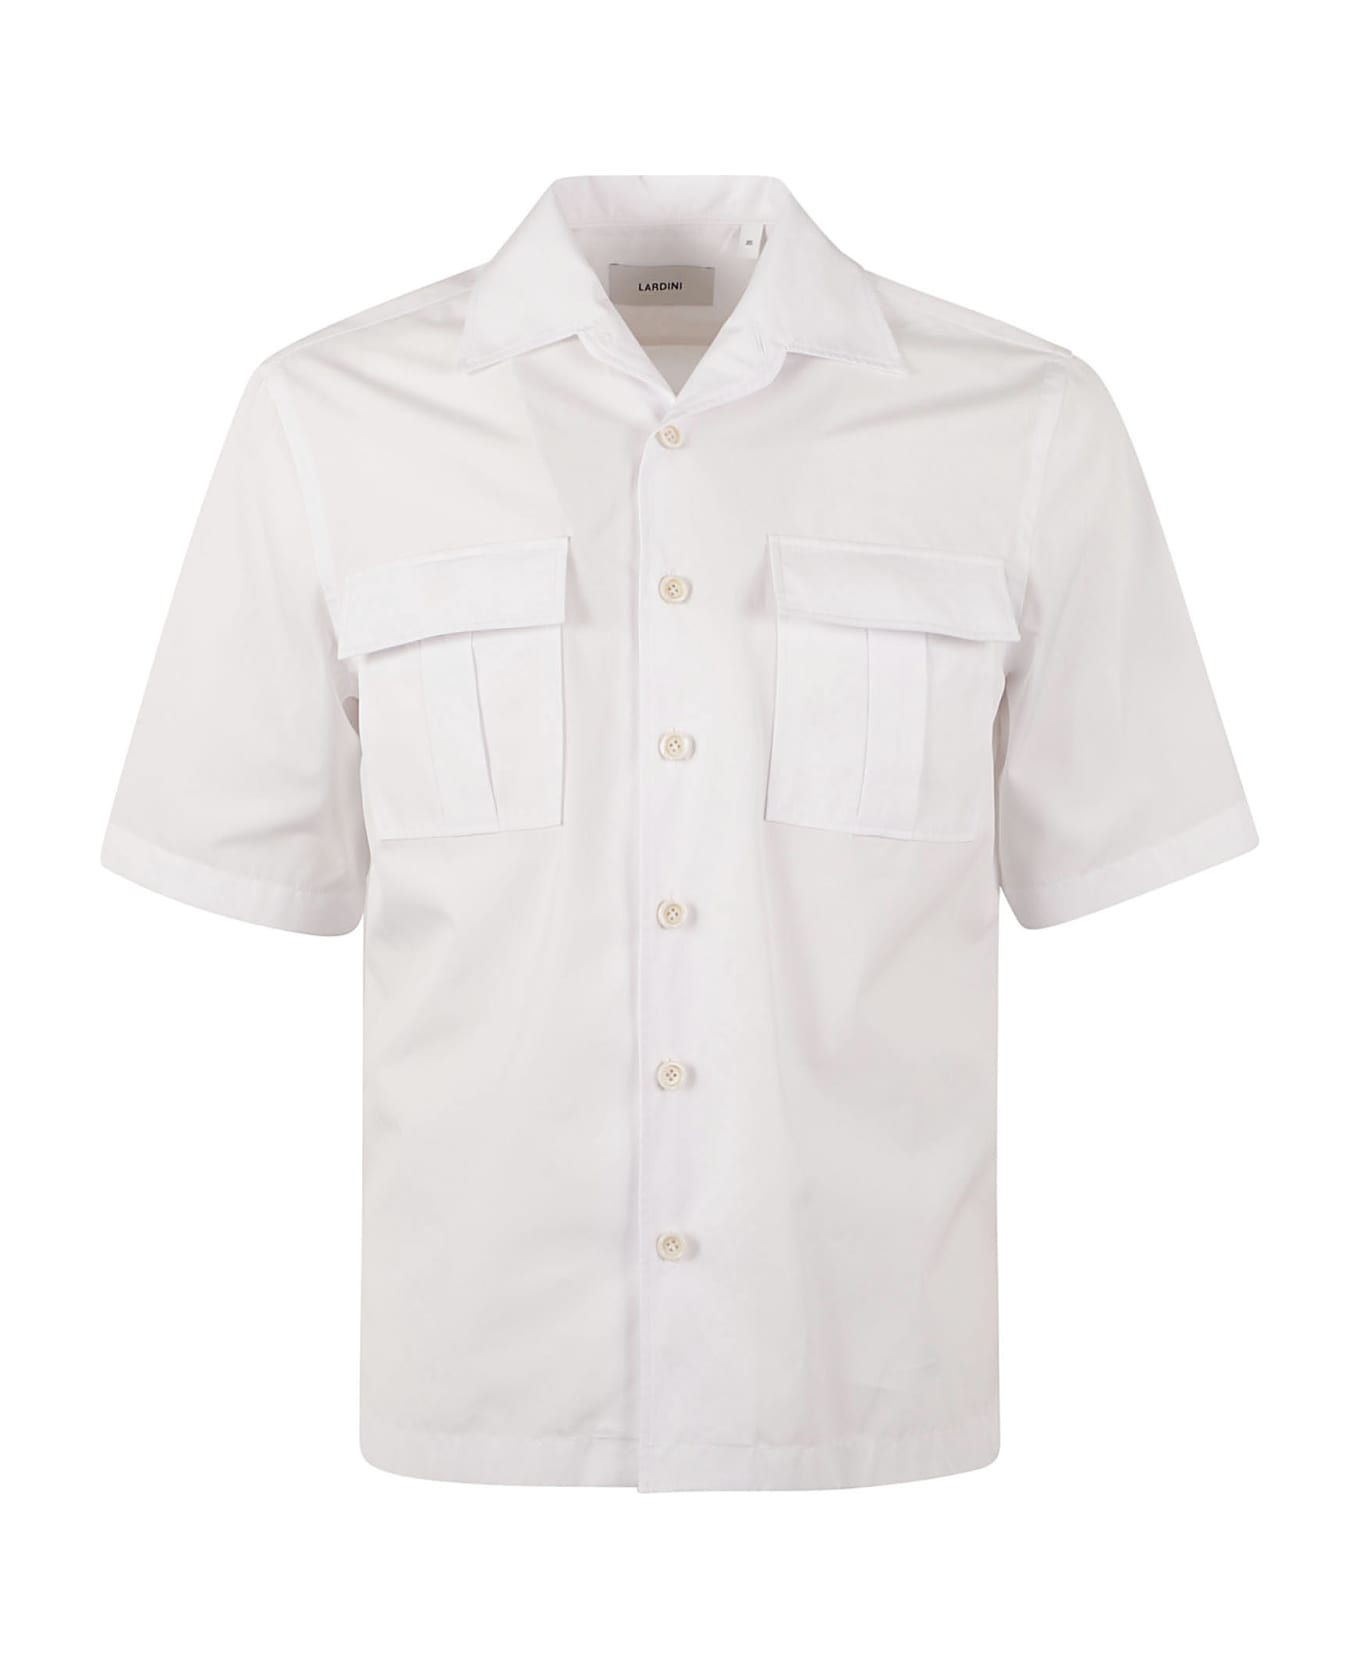 Lardini Pocket Shirt - Bianco シャツ